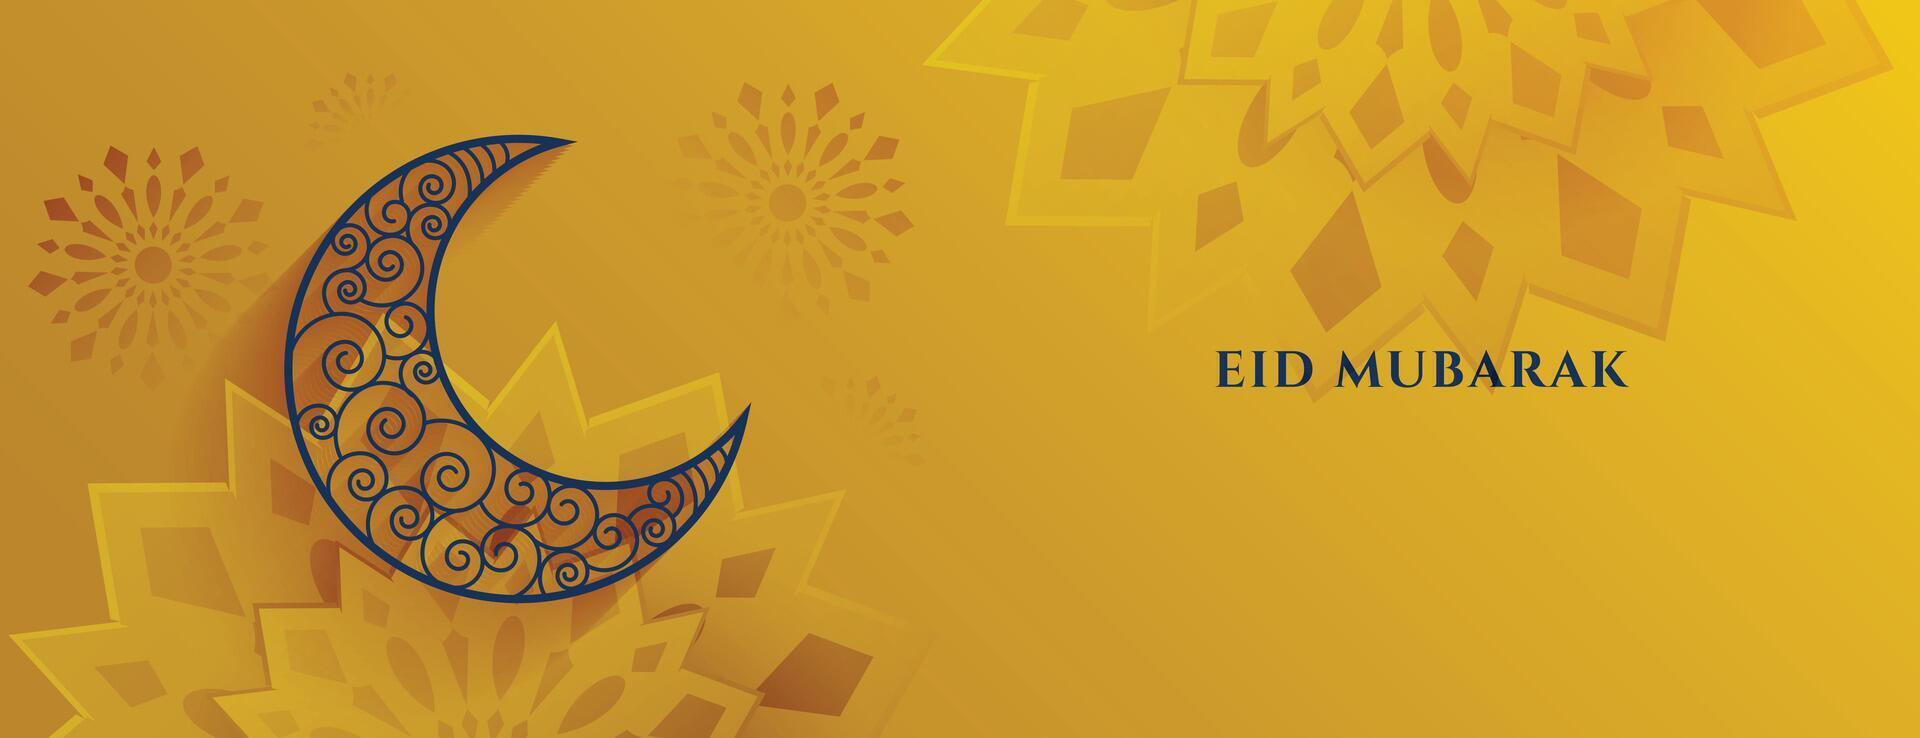 islámico estilo eid Mubarak festival decorativo bandera diseño vector